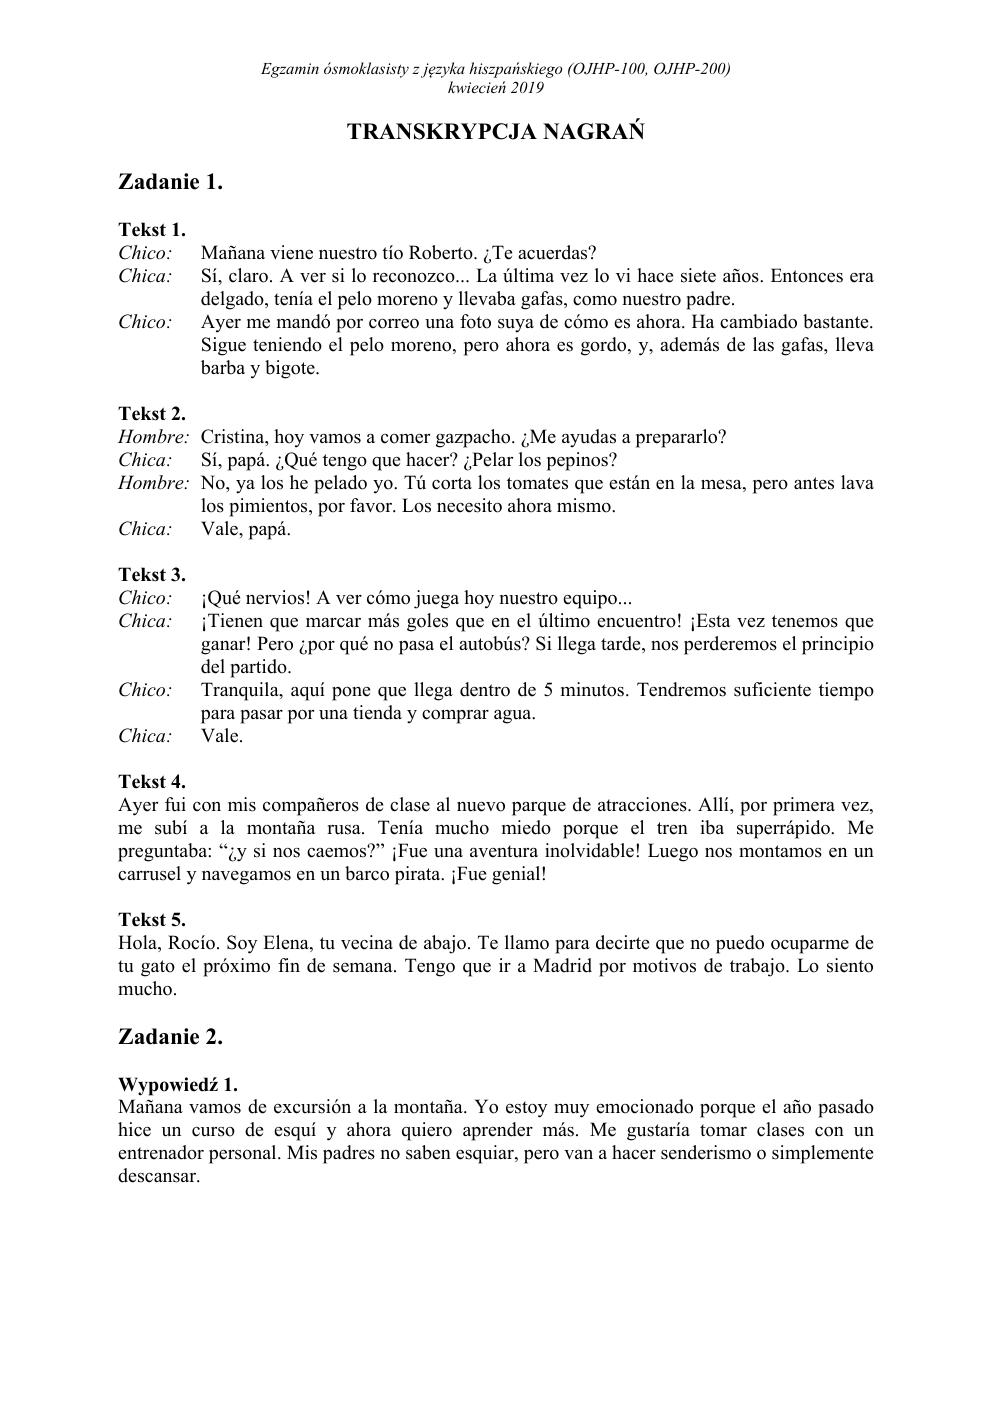 transkrypcja - hiszpański - egzamin ósmoklasisty 2019-1